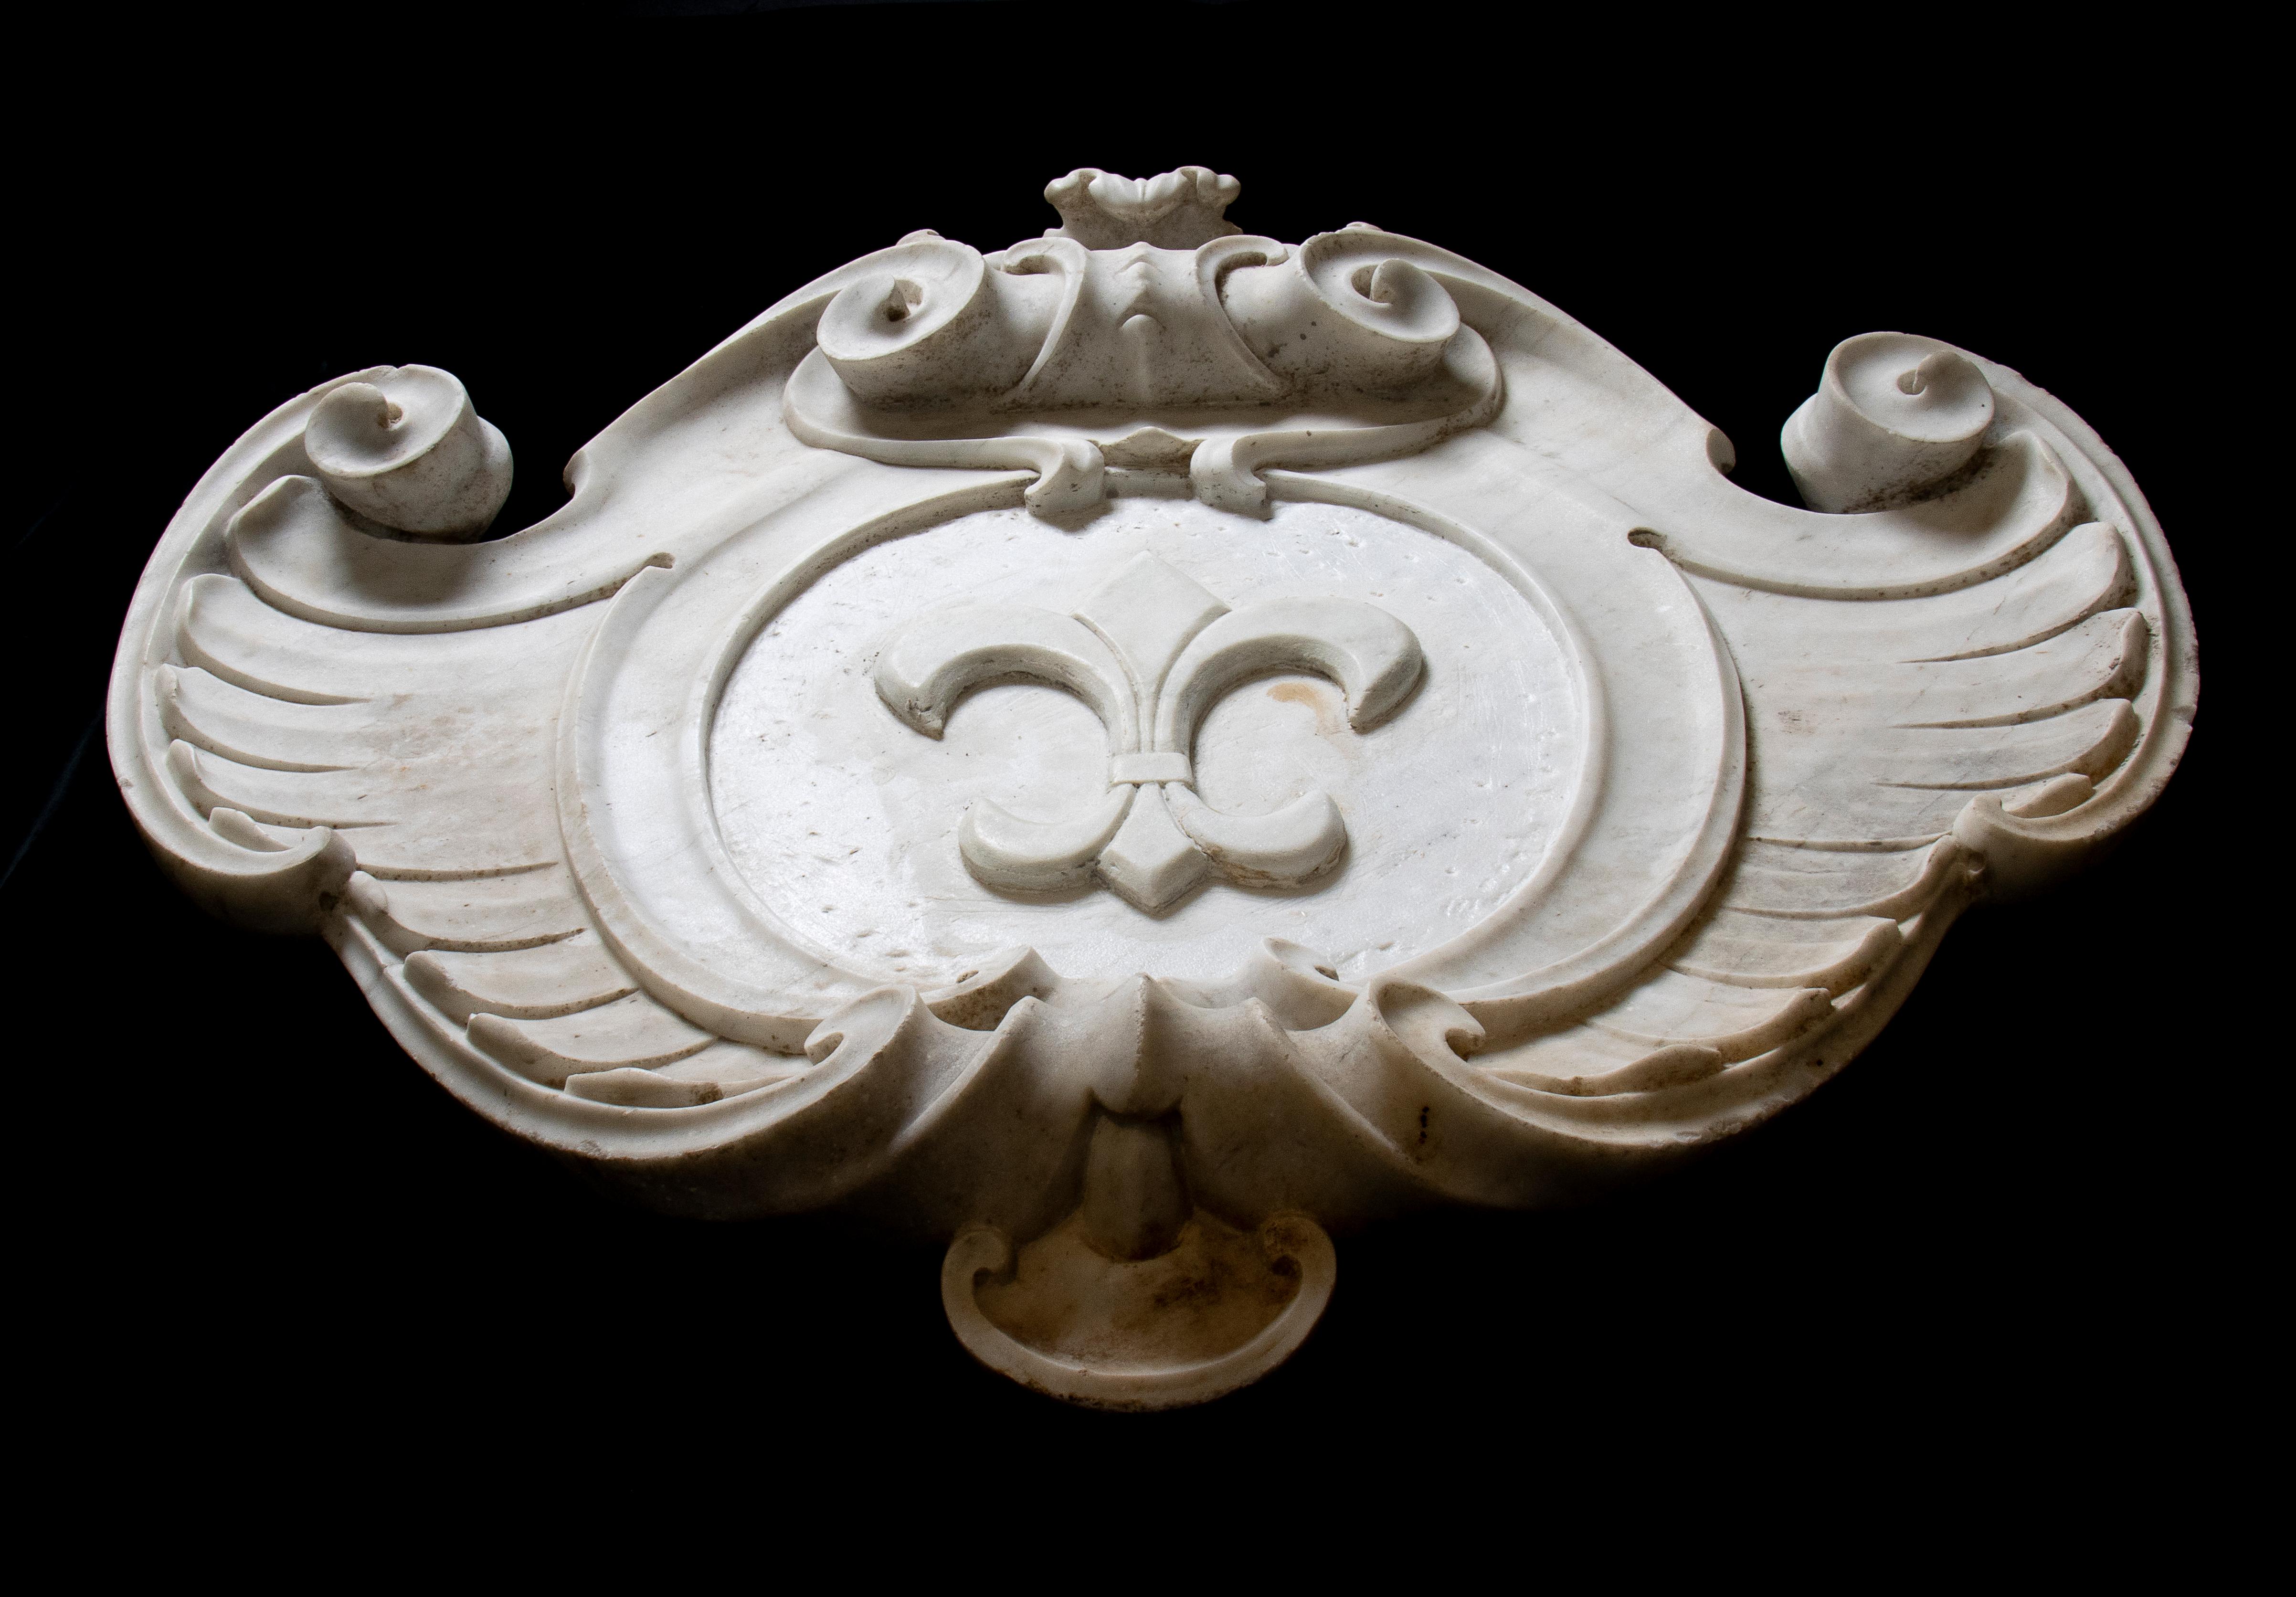 Ein sehr interessantes Wappen aus weißem Marmor mit symmetrischer Struktur und doppeltem Rollendekor sowie Akanthusblattschnitzereien. Mit zentraler Darstellung einer Lilienblüte im Wappen.
Die Fleur-de-Lis, auch Fleur-de-Lys genannt, ist ein